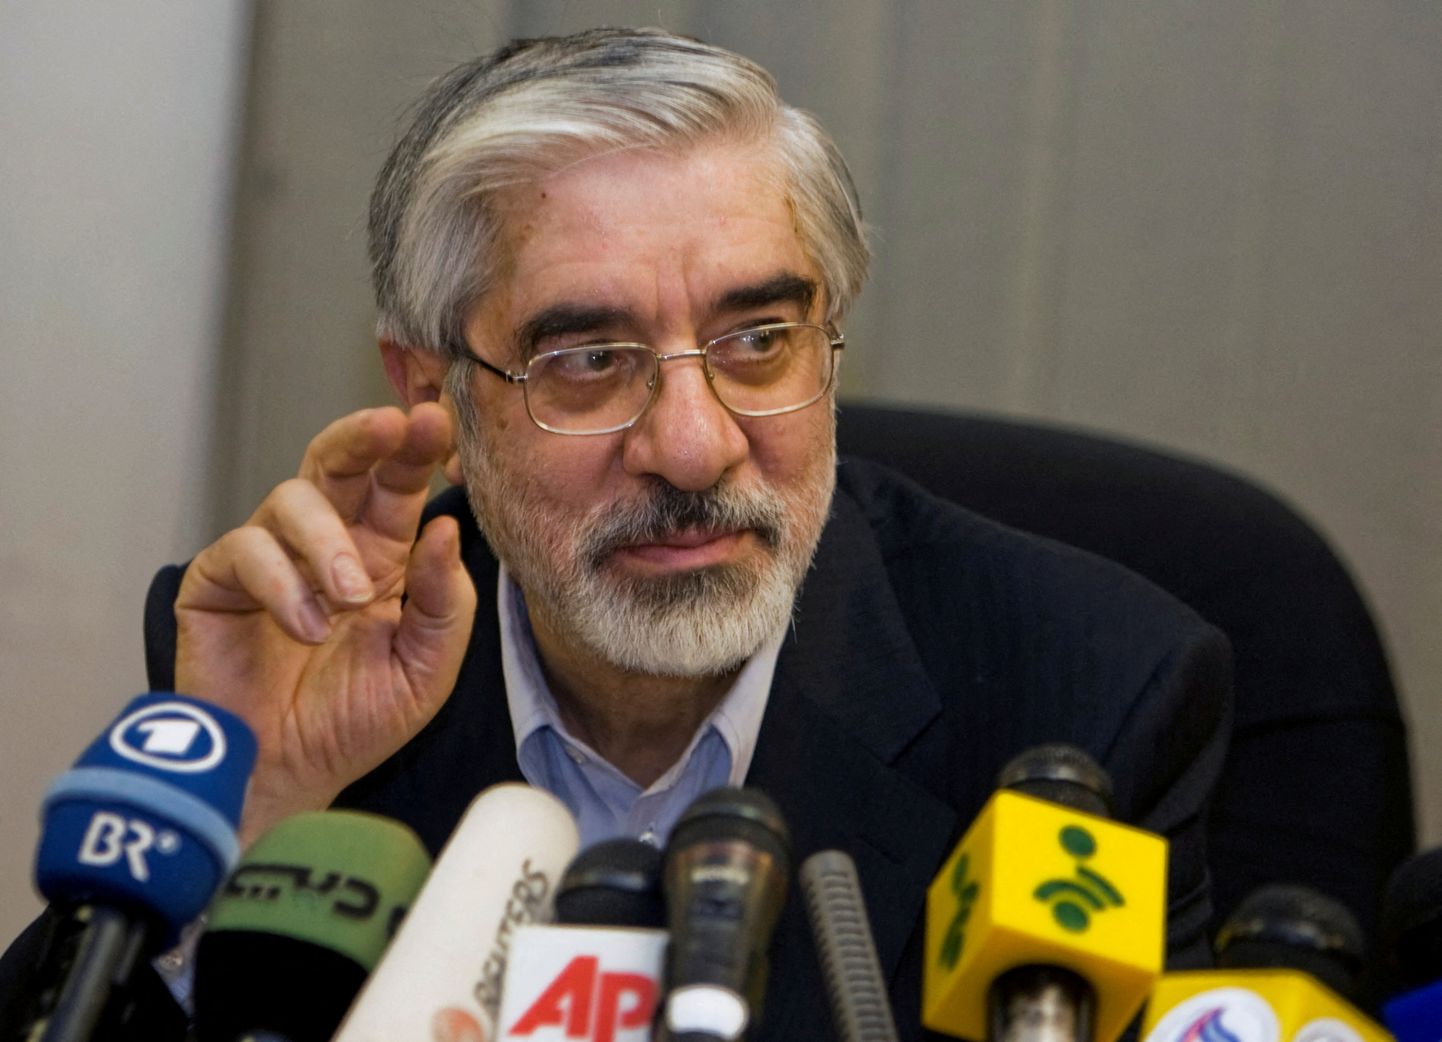 Iraani opositsiooniliider Mir Hossein Mousavi. Foto on tehtud 2009. aasta 12. juunil Teheranis.